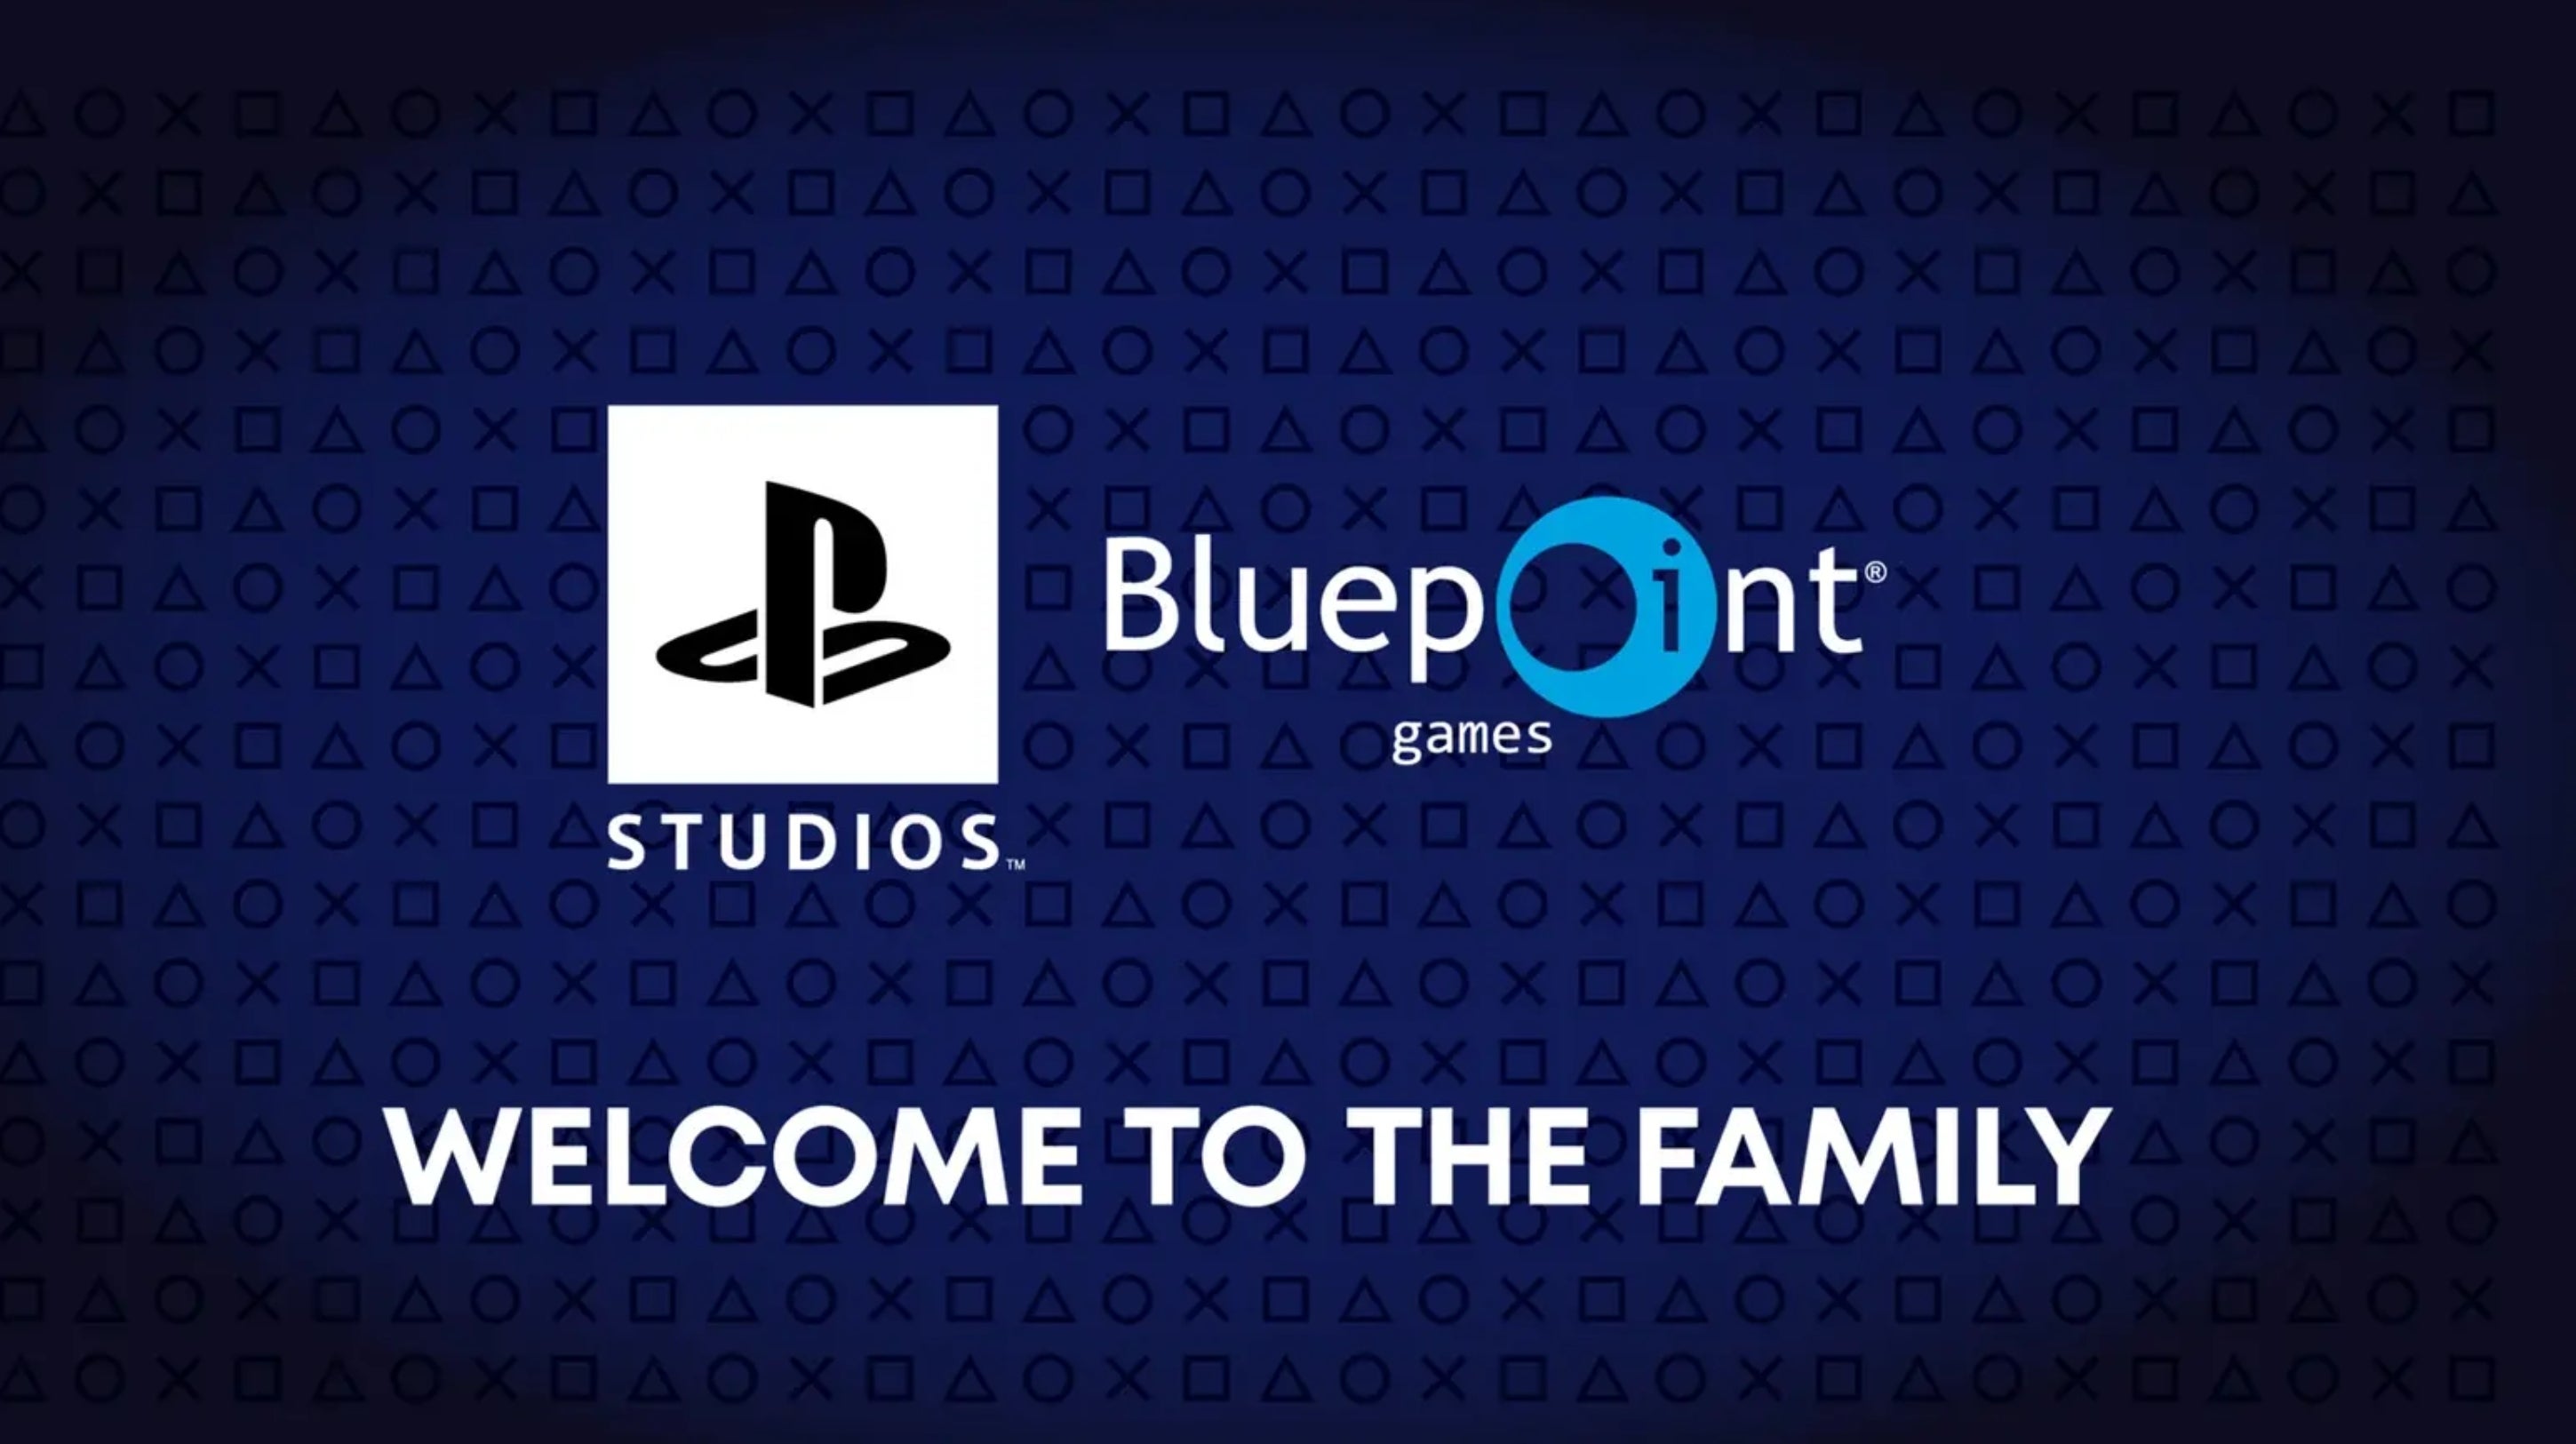 Imagen para PlayStation anuncia la compra de Bluepoint Games